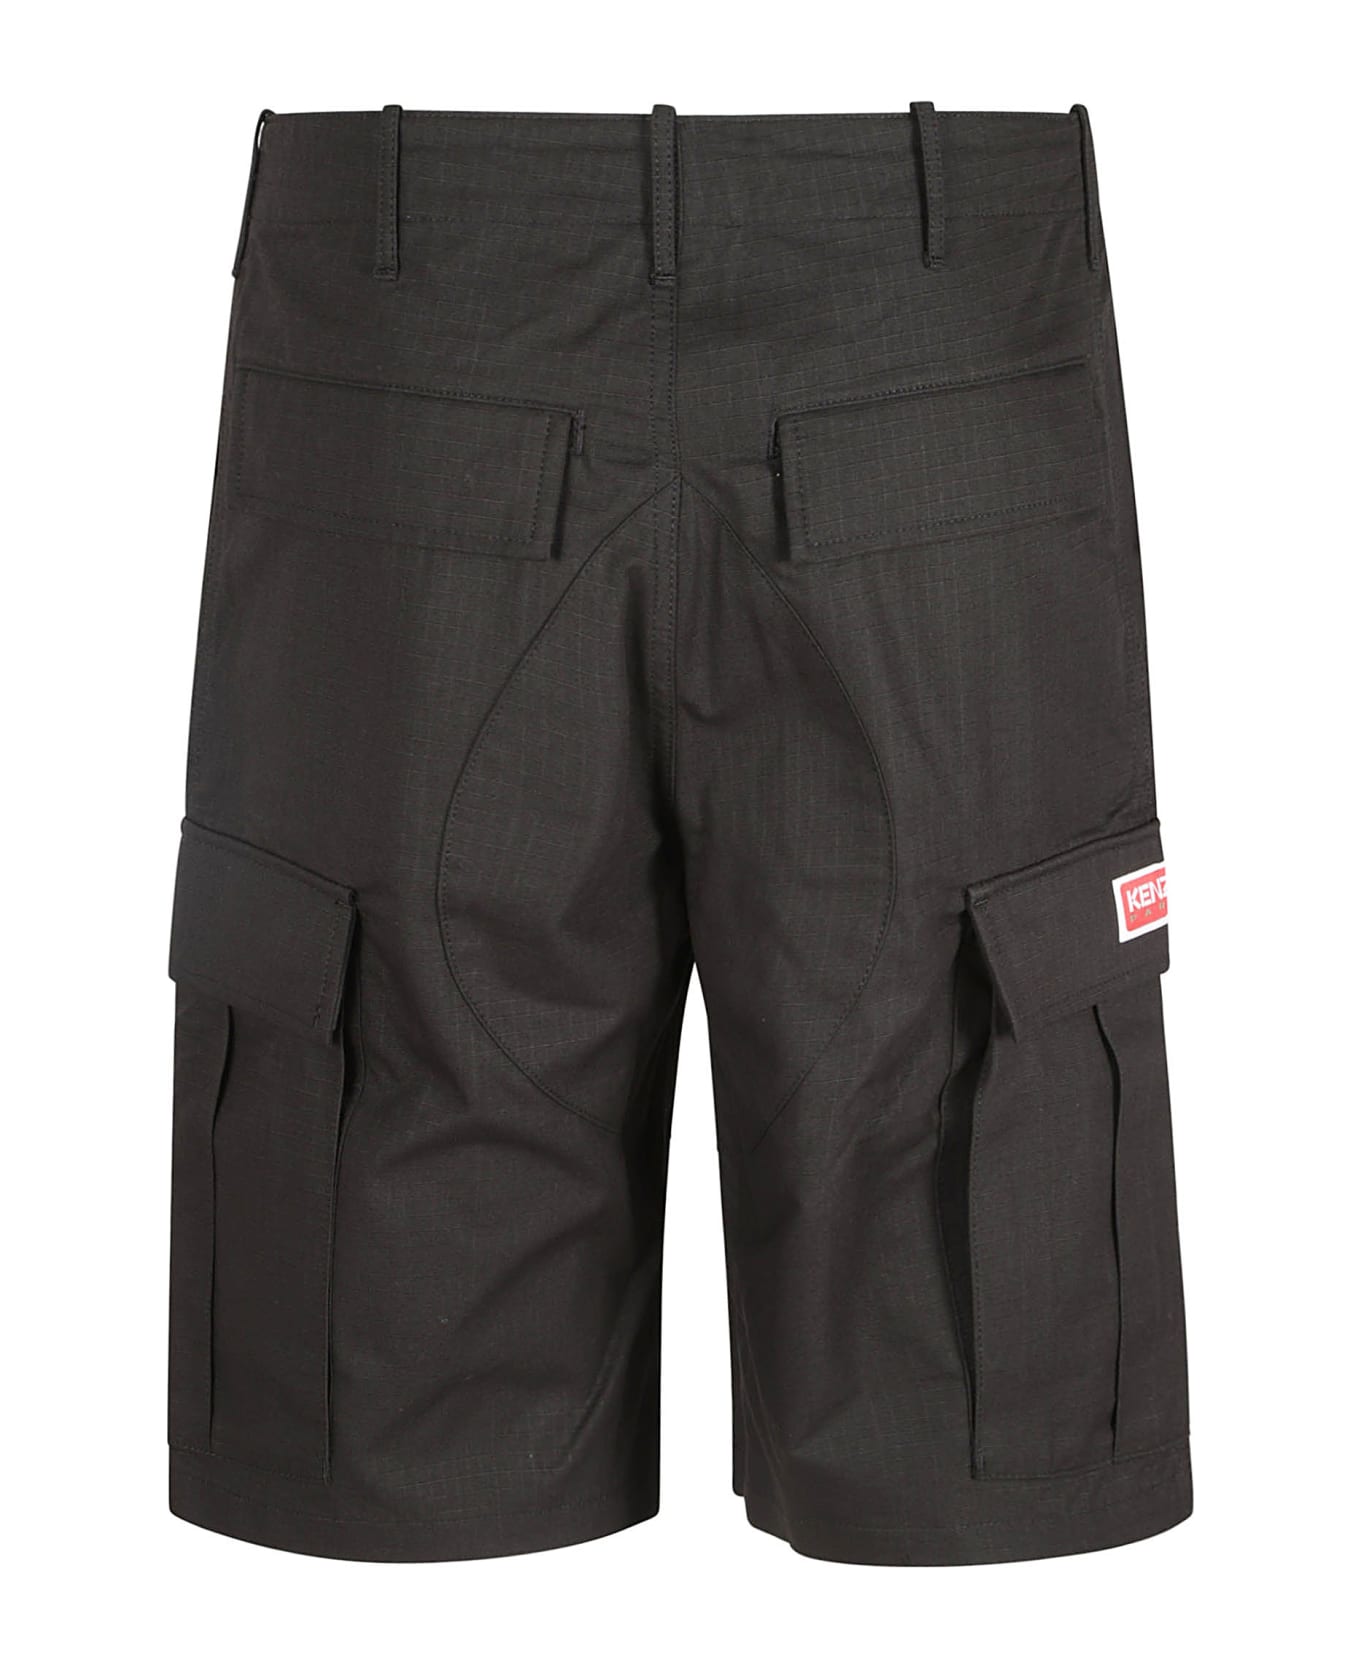 Kenzo Workwear Shorts - Black